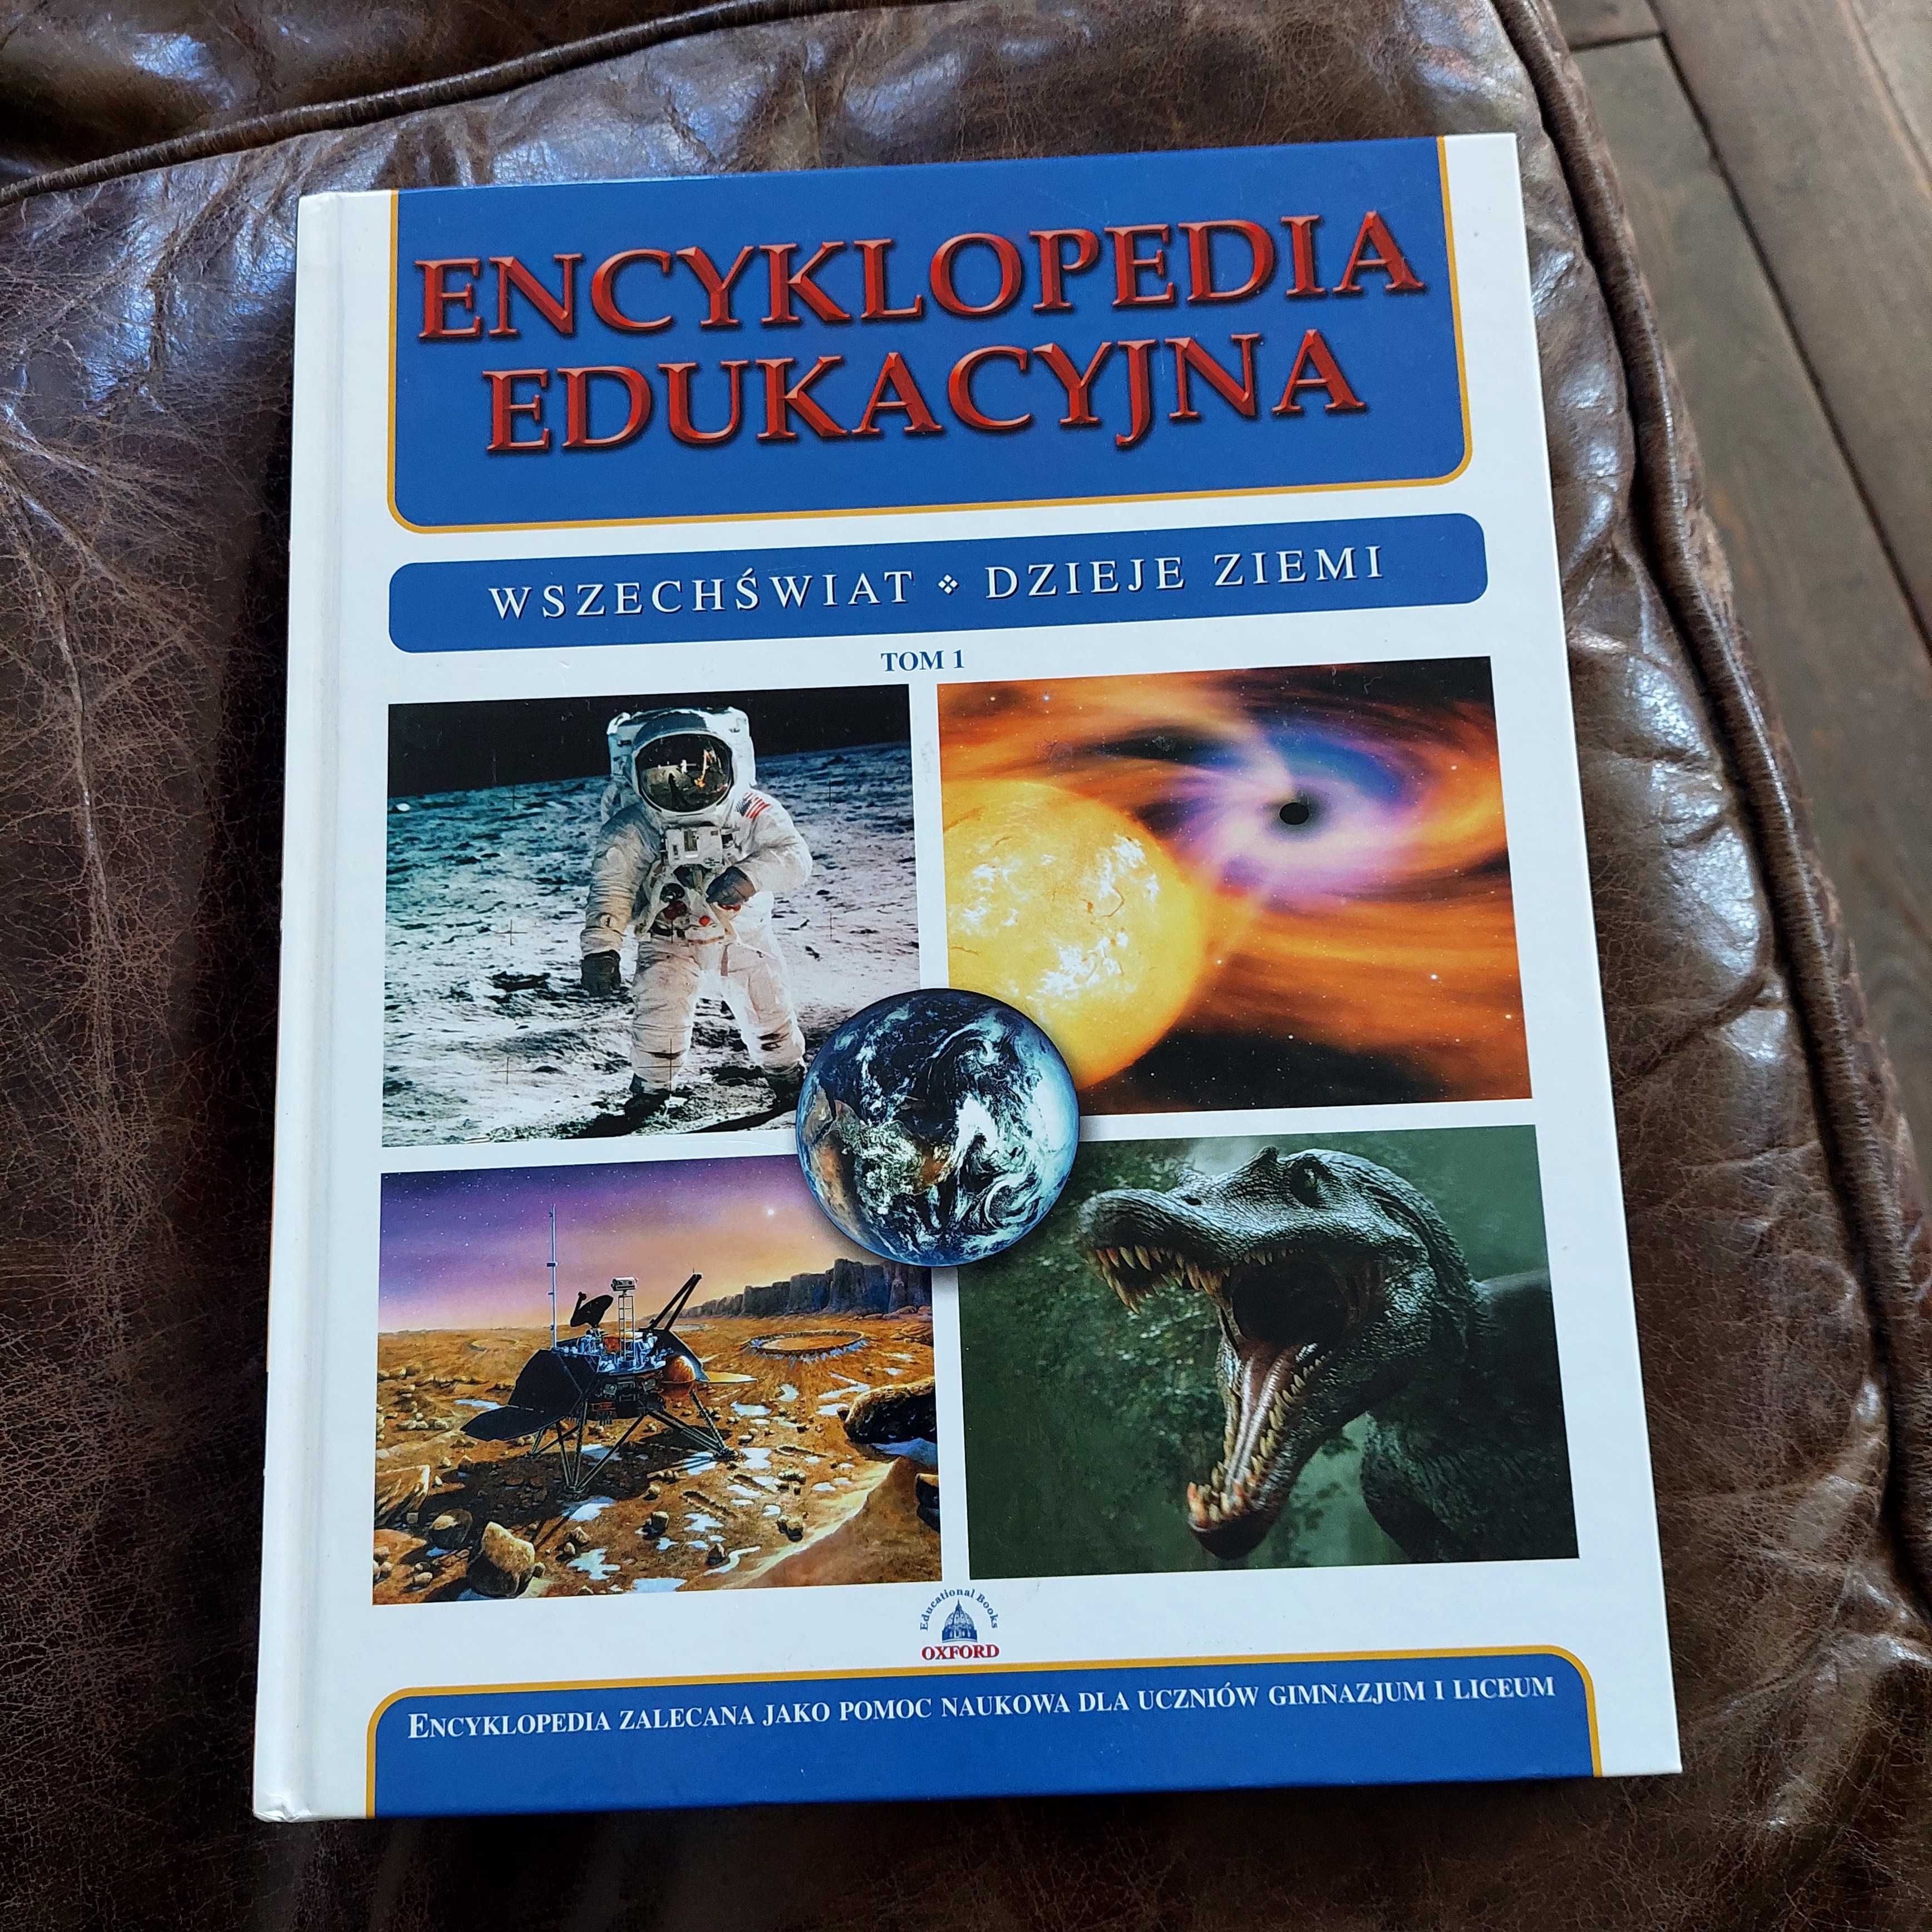 Encyklopedia edukacyjna.wrzechświat dzieje ziemi